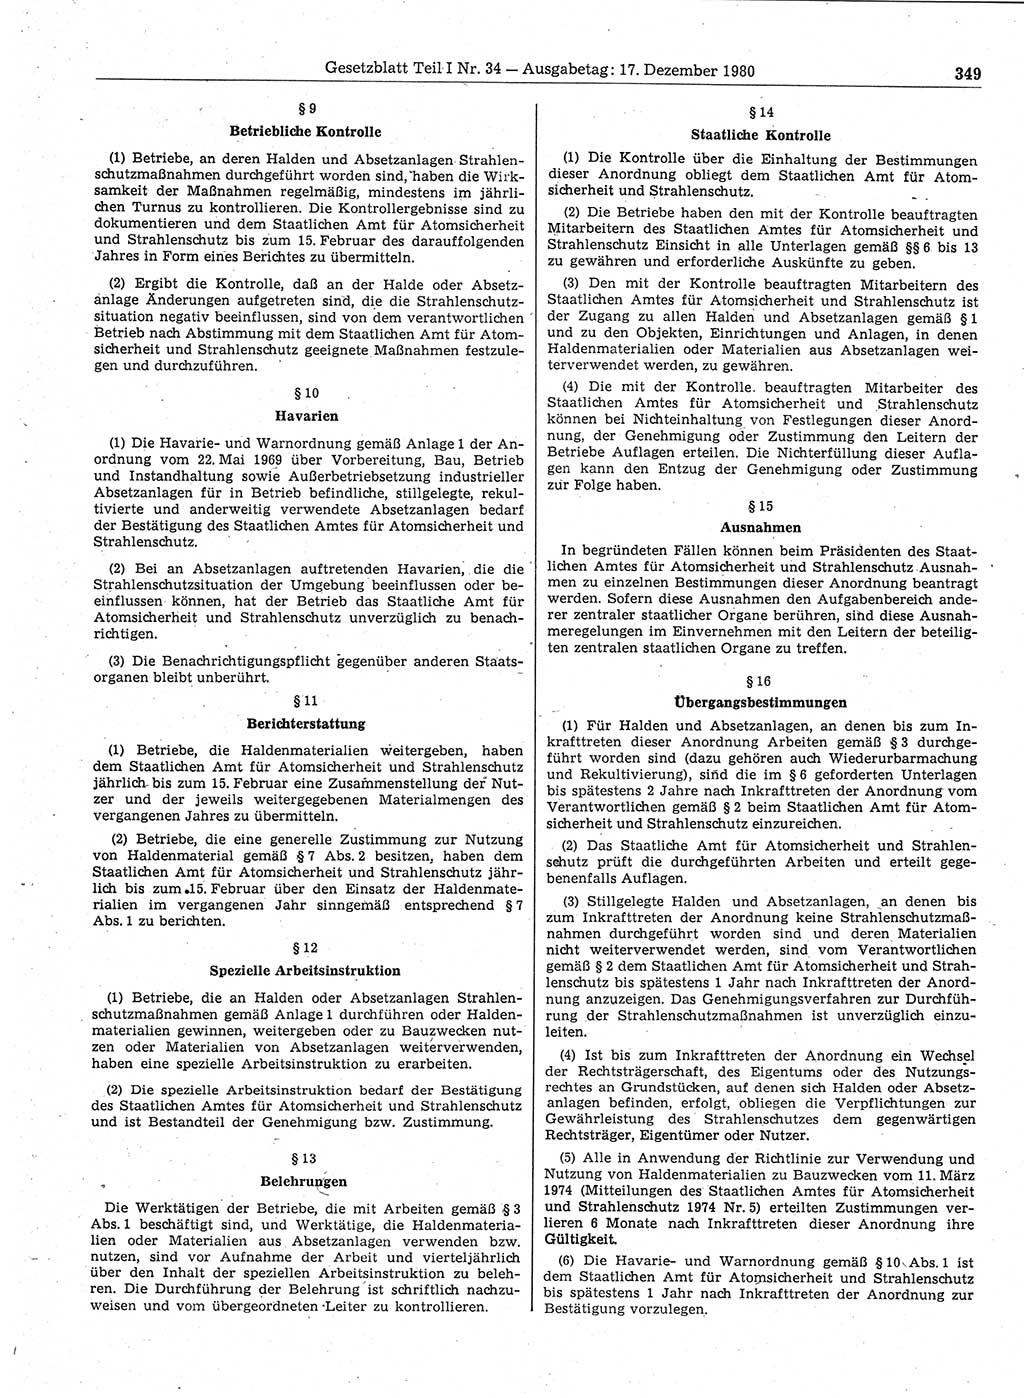 Gesetzblatt (GBl.) der Deutschen Demokratischen Republik (DDR) Teil Ⅰ 1980, Seite 349 (GBl. DDR Ⅰ 1980, S. 349)